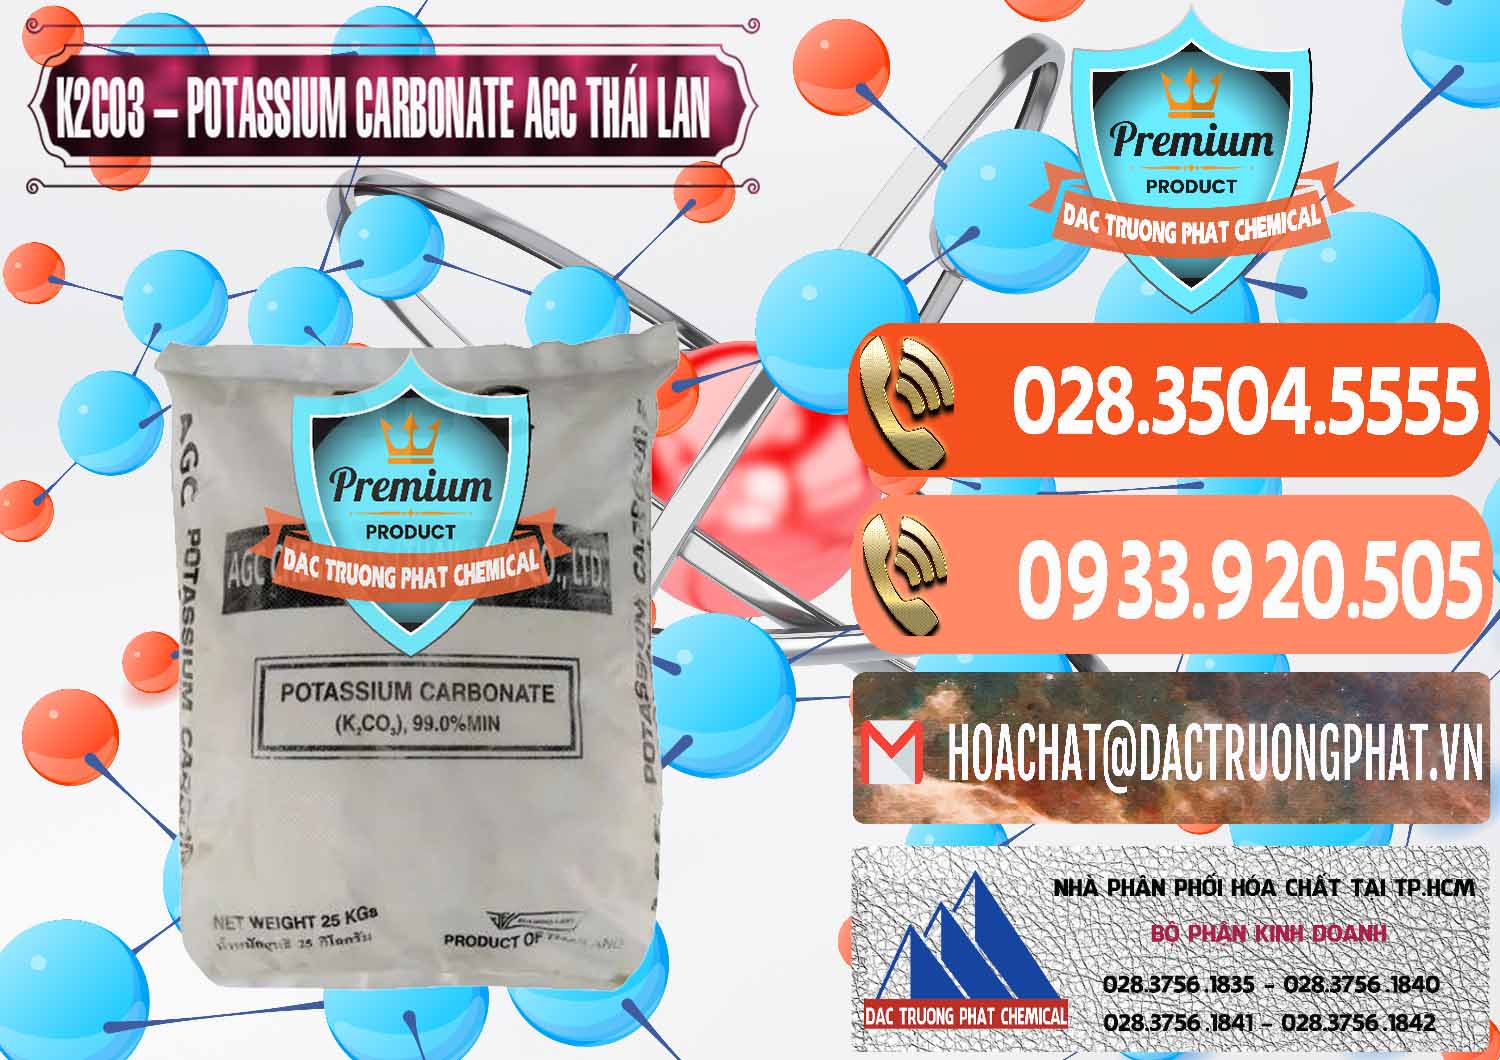 Cty chuyên kinh doanh & bán K2Co3 – Potassium Carbonate AGC Thái Lan Thailand - 0471 - Nhập khẩu & phân phối hóa chất tại TP.HCM - hoachatmientay.com